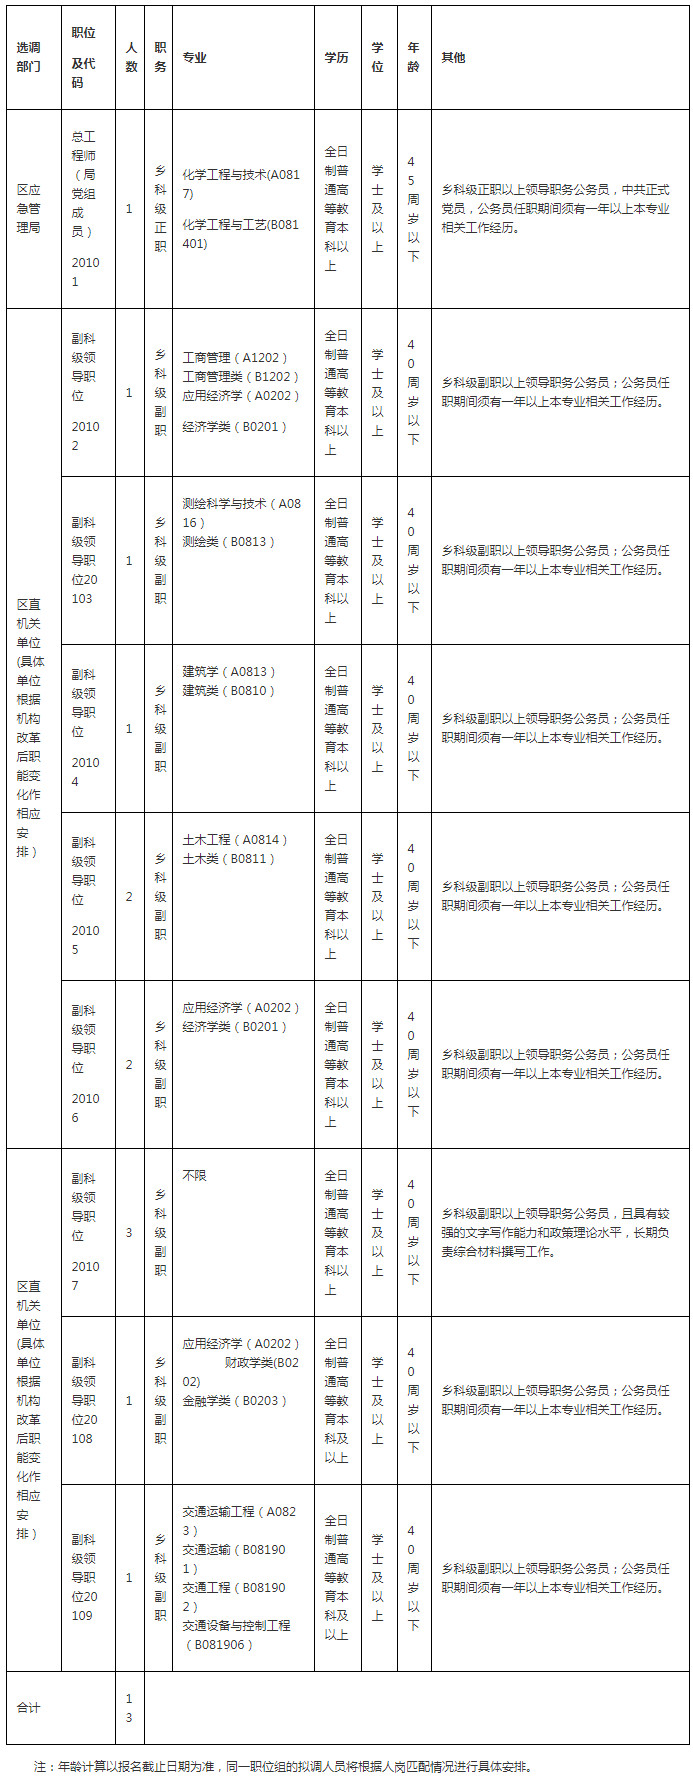 湛江经济技术开发区职位表.jpg